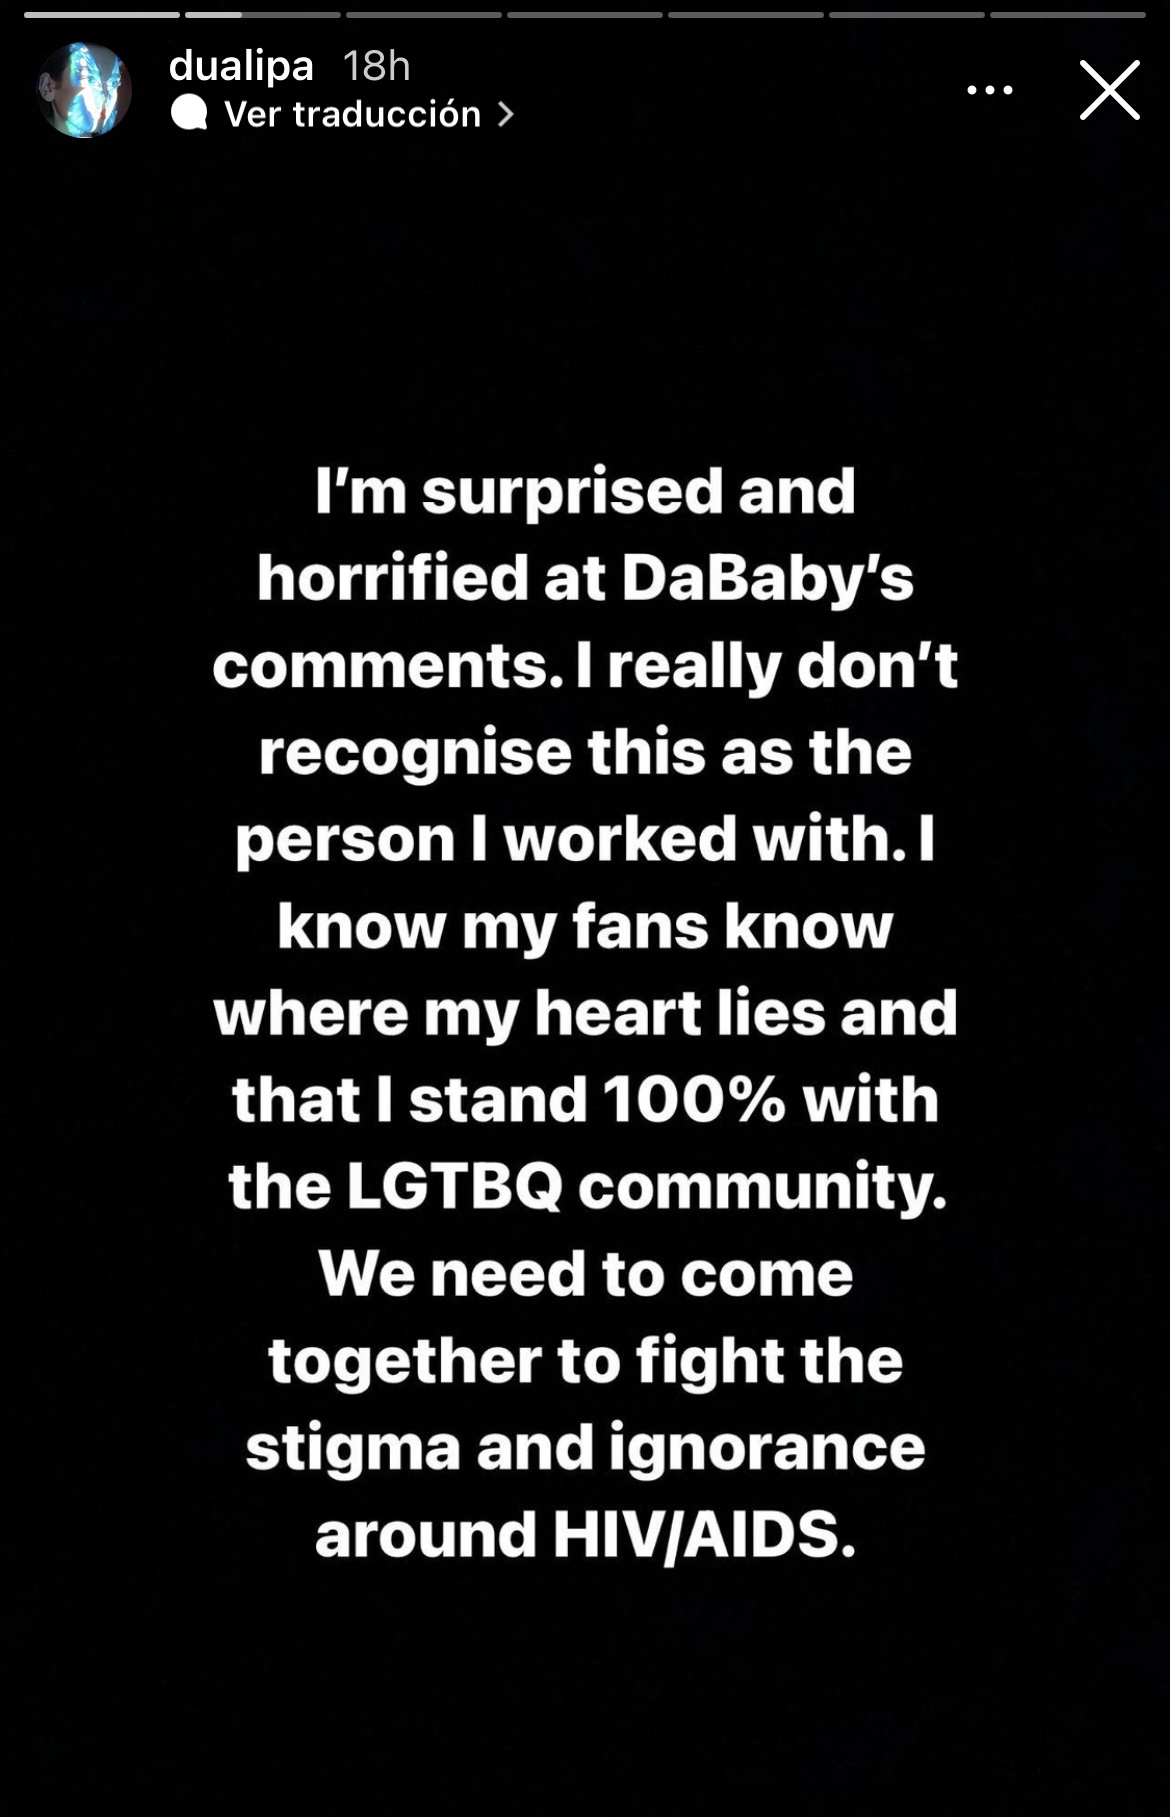 Dua Lipa habla sobre los comentarios homofóbicos de DaBaby